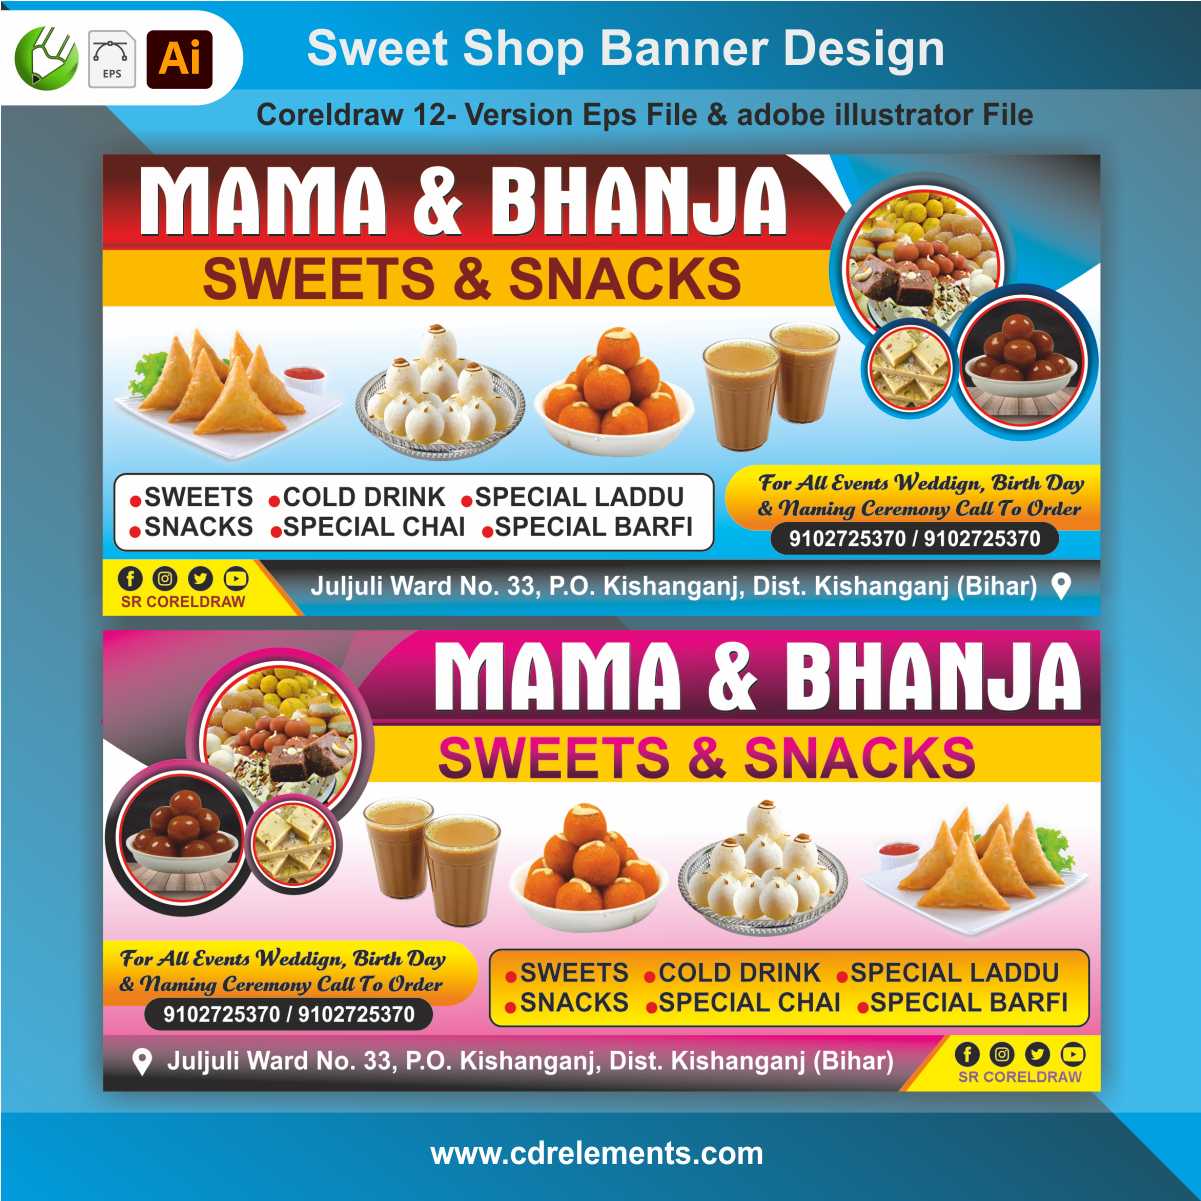 Sweet Shop Banner Flex Design Cdr File Eps File & adobe